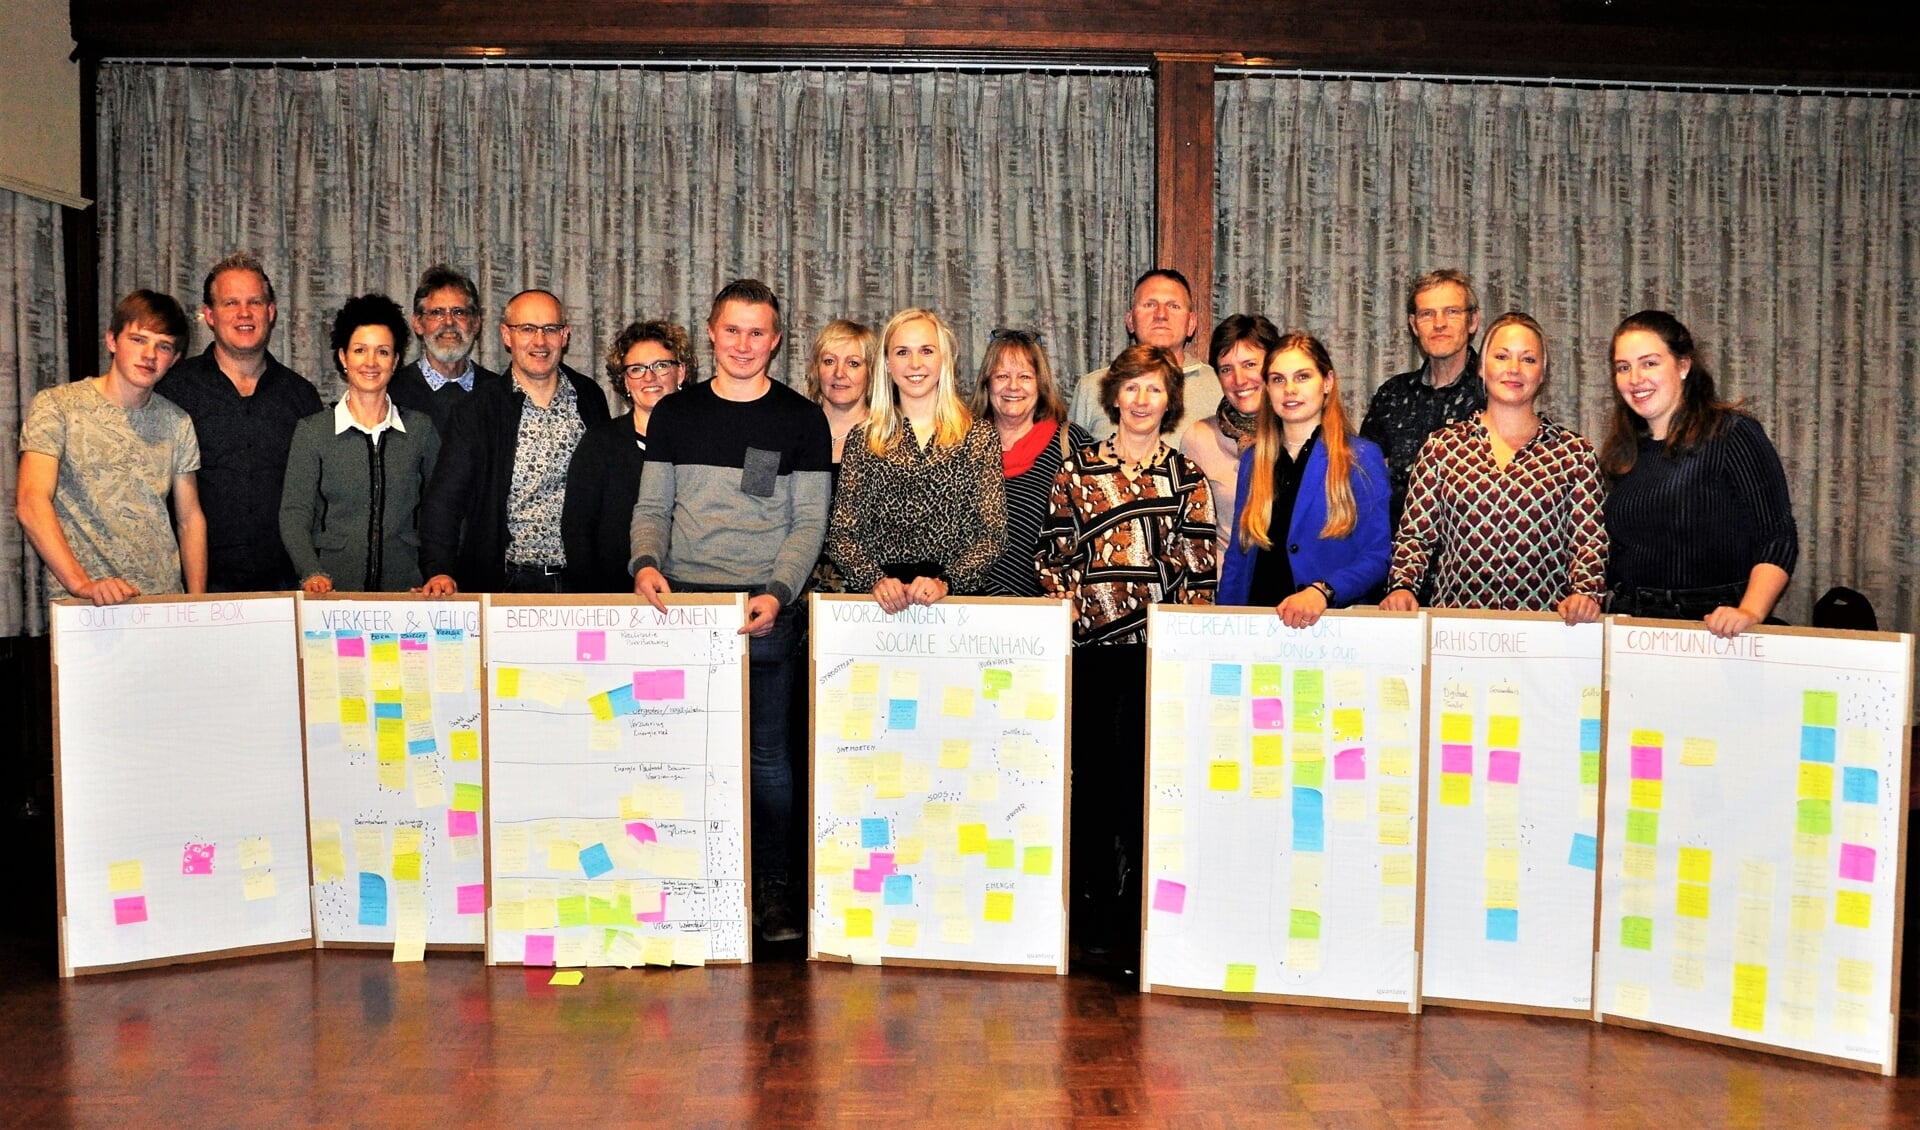 Leden van o.a. de werkgroep dorpsplan Zwolle achter de themaborden met ideeën en wensen.